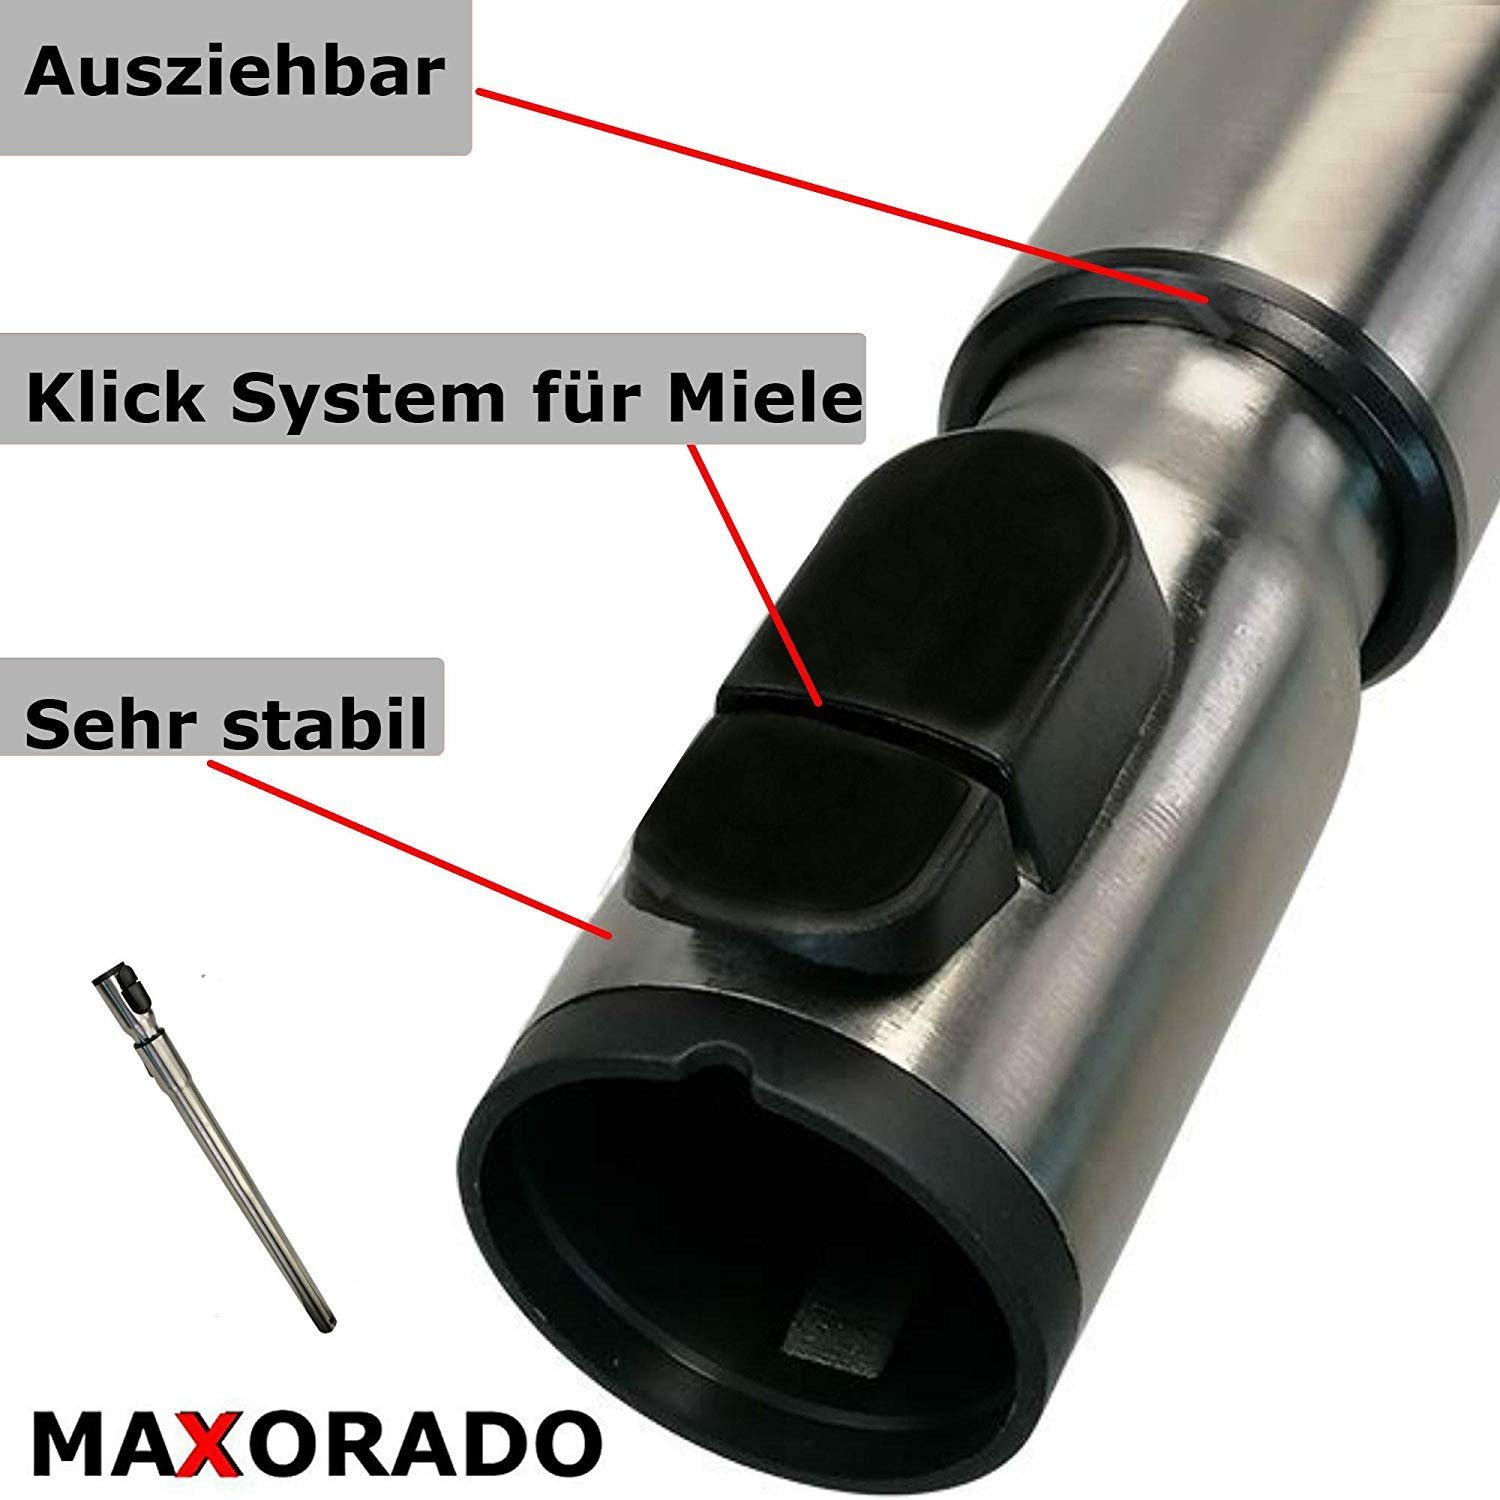 Maxorado Staubsaugerrohr Teleskoprohr Staubsauger Rohr Zubehör 5380 S S5380 S Miele für 5381